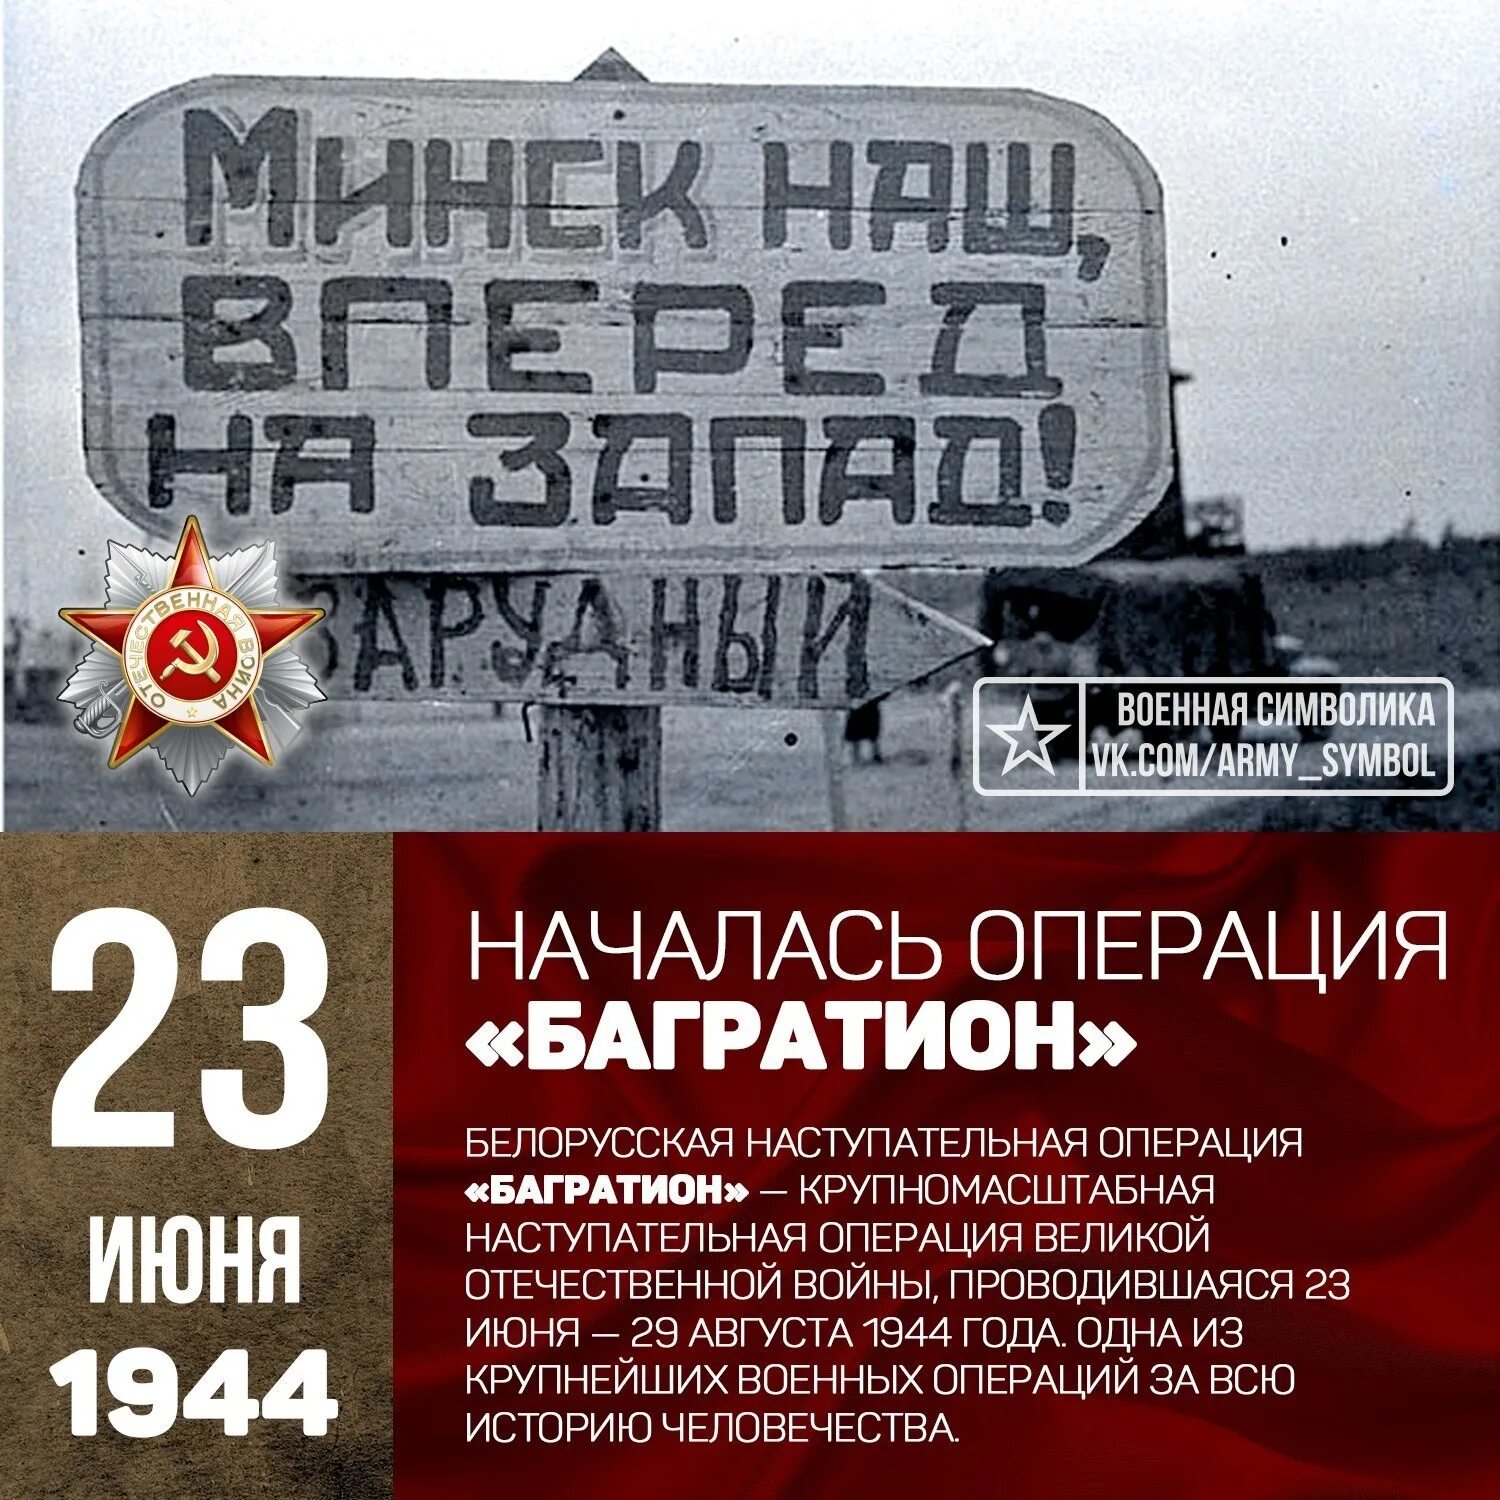 Операция в белоруссии 1944. Белорусская операция 23 июня 29 августа 1944. 23 Июня 1944 года началась операция Багратион. 23 Июня началась белорусская наступательная операция «Багратион». Белоруссия 1944 Багратион.